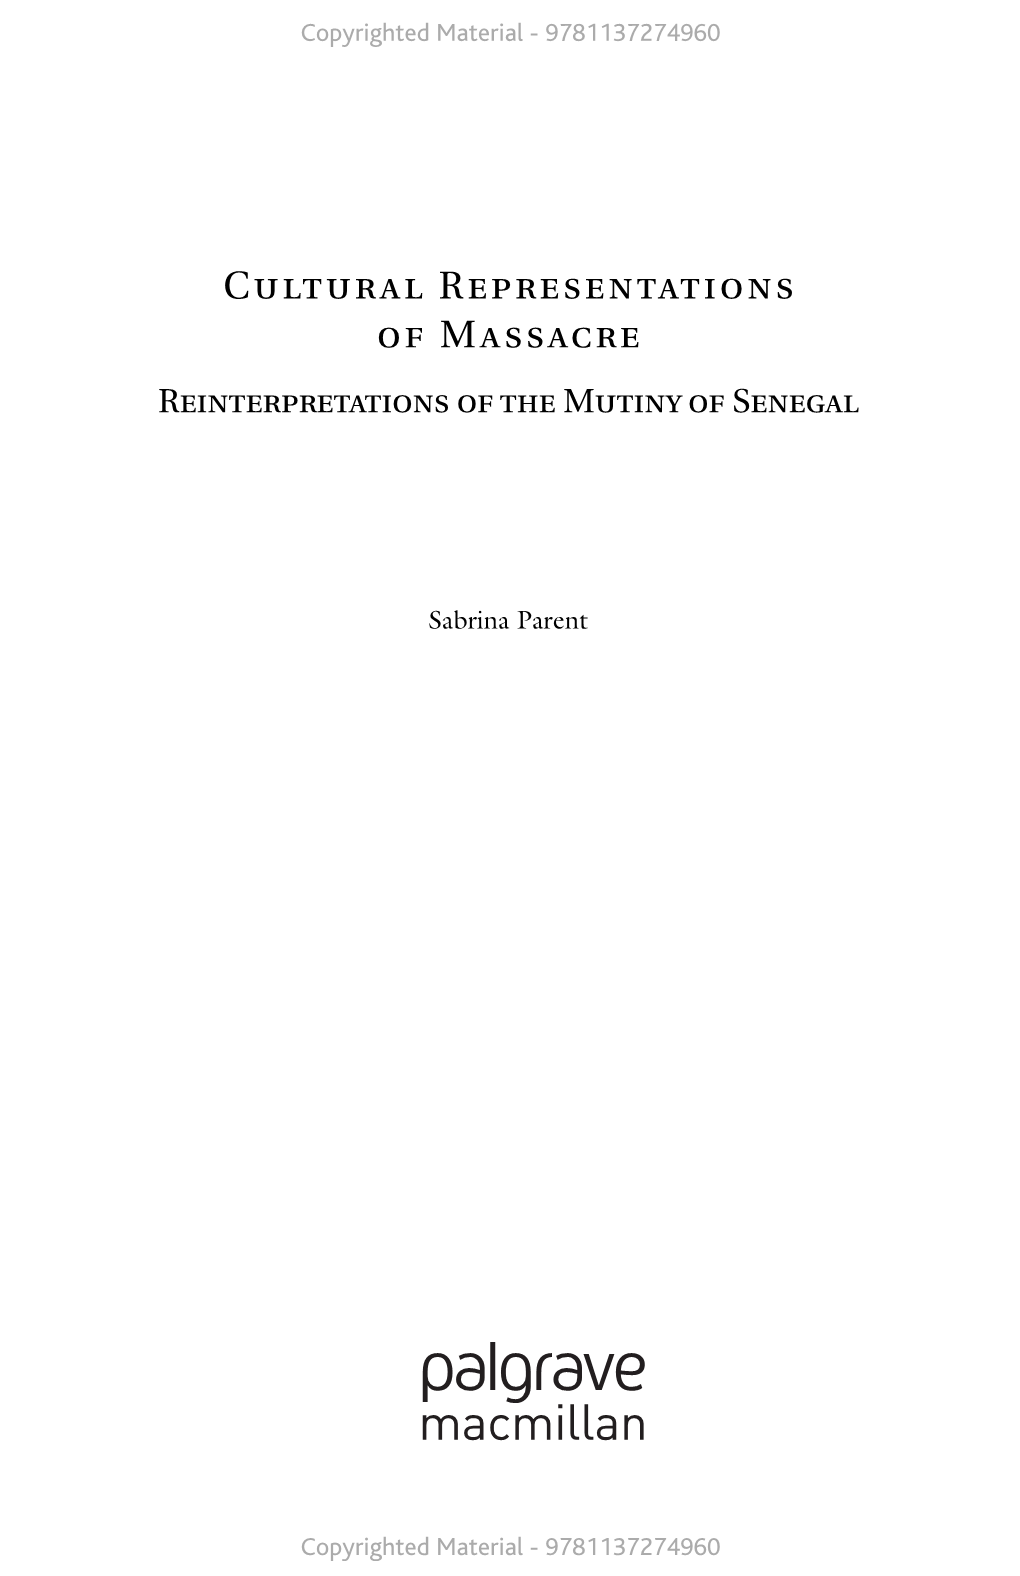 Cultural Representations of Massacre Reinterpretations of the Mutiny of Senegal